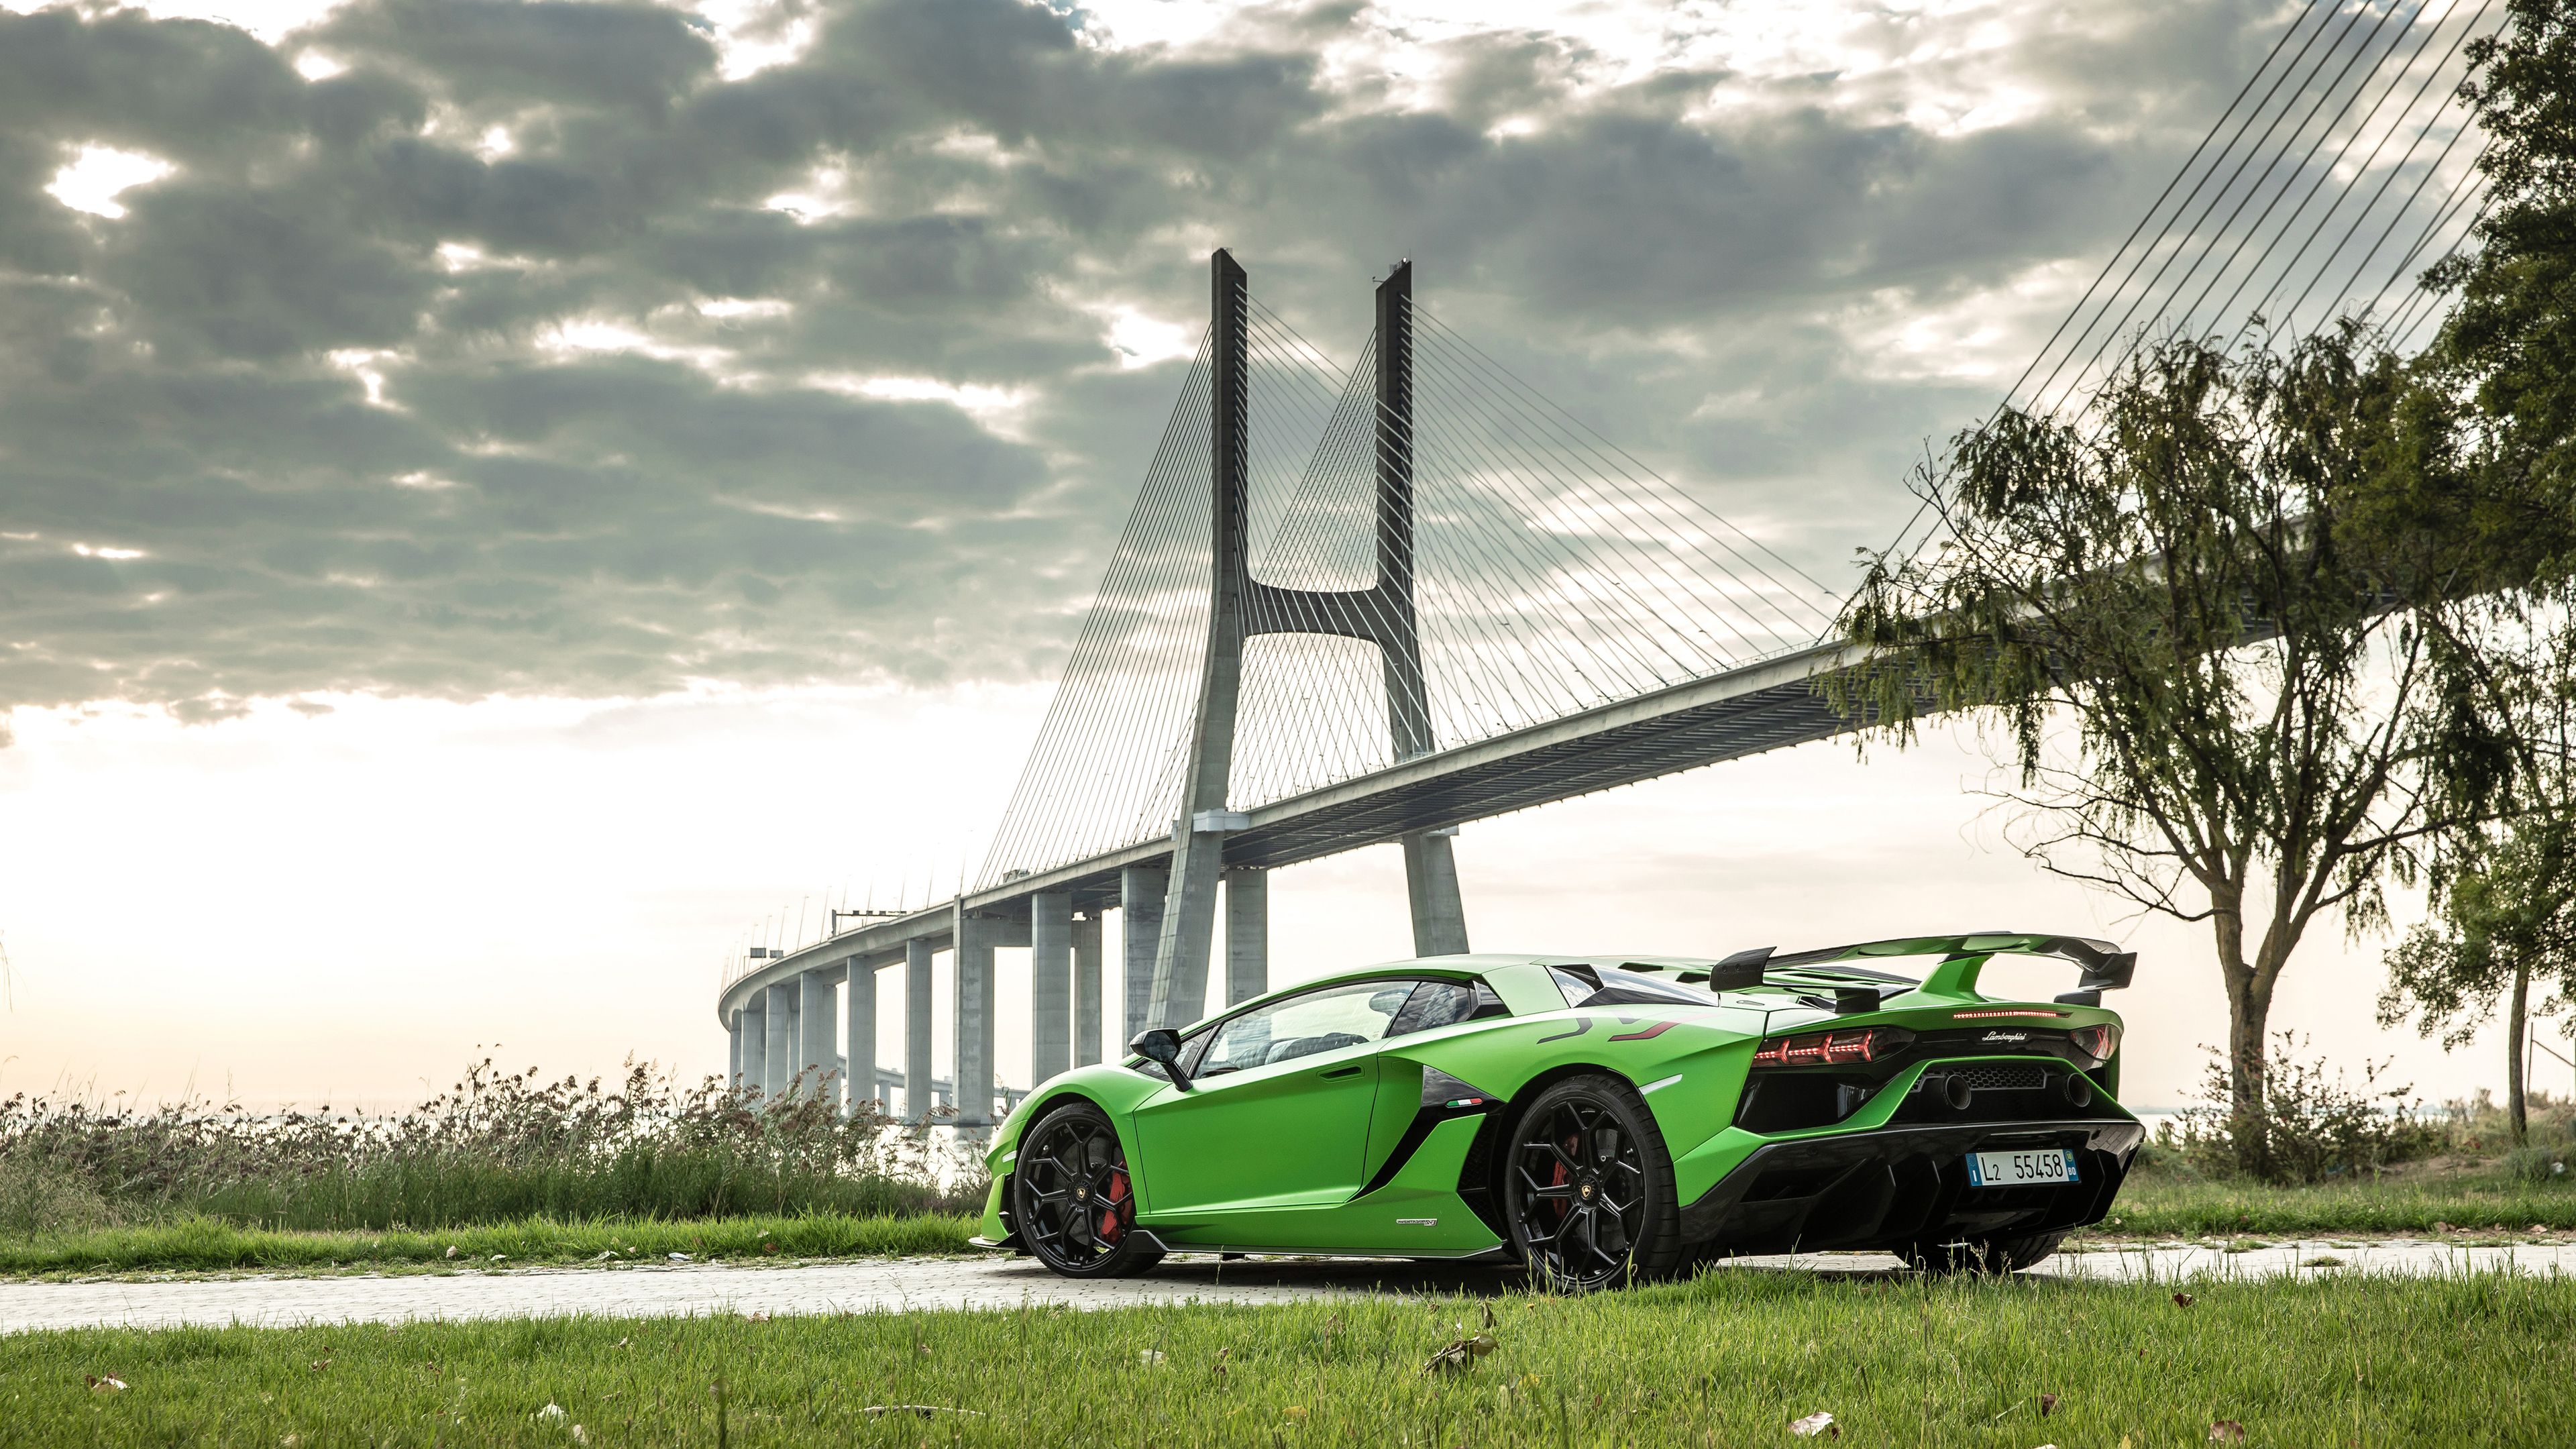 Nâng tầm tính thẩm mỹ cho màn hình Desktop của bạn với hình nền Lamborghini đẹp mắt. Hình ảnh chiếc siêu xe cao cấp này chắc chắn sẽ khiến bạn cảm thấy thú vị mỗi khi bật máy tính. Chọn hình và cảm nhận sự hoàn mỹ và tinh tế từ những đường nét của Lamborghini.